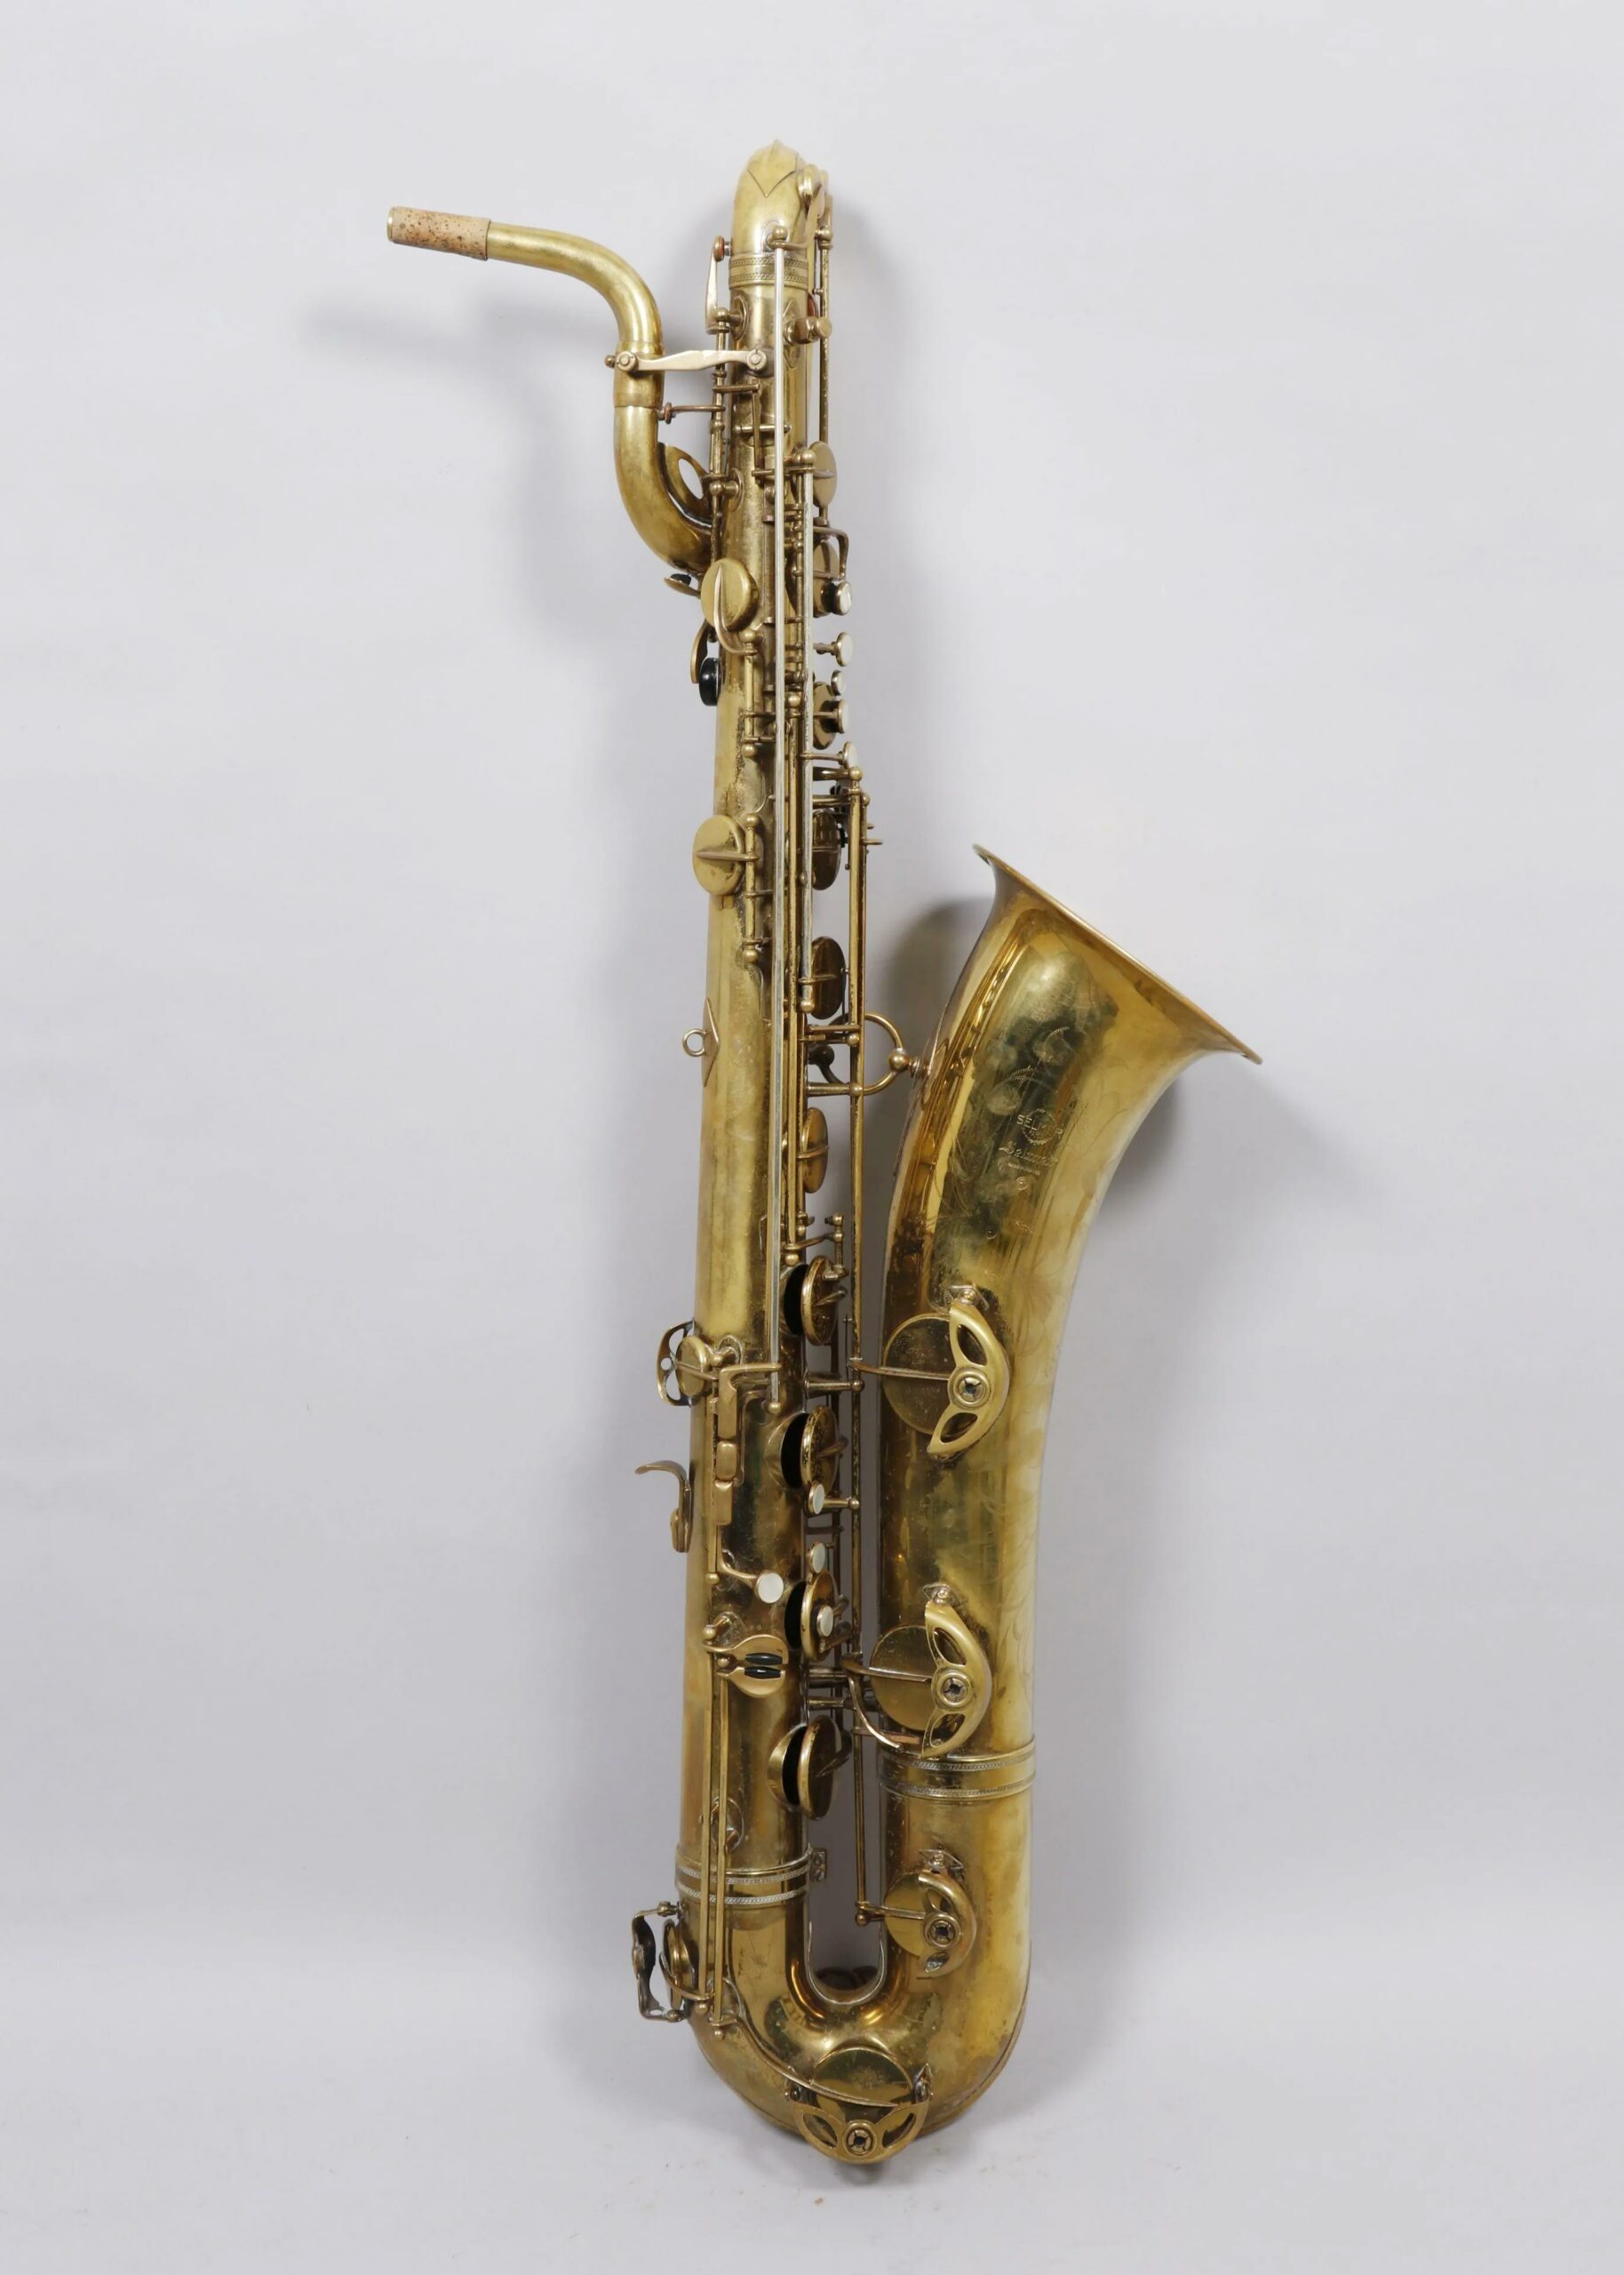 Saxophone baryton en laiton verni de SELMER modèle Mark VI de 1966, avec si bémol grave. Instrument mis en vente par Vichy Enchères le 1er mai 2021 © C. Darbelet